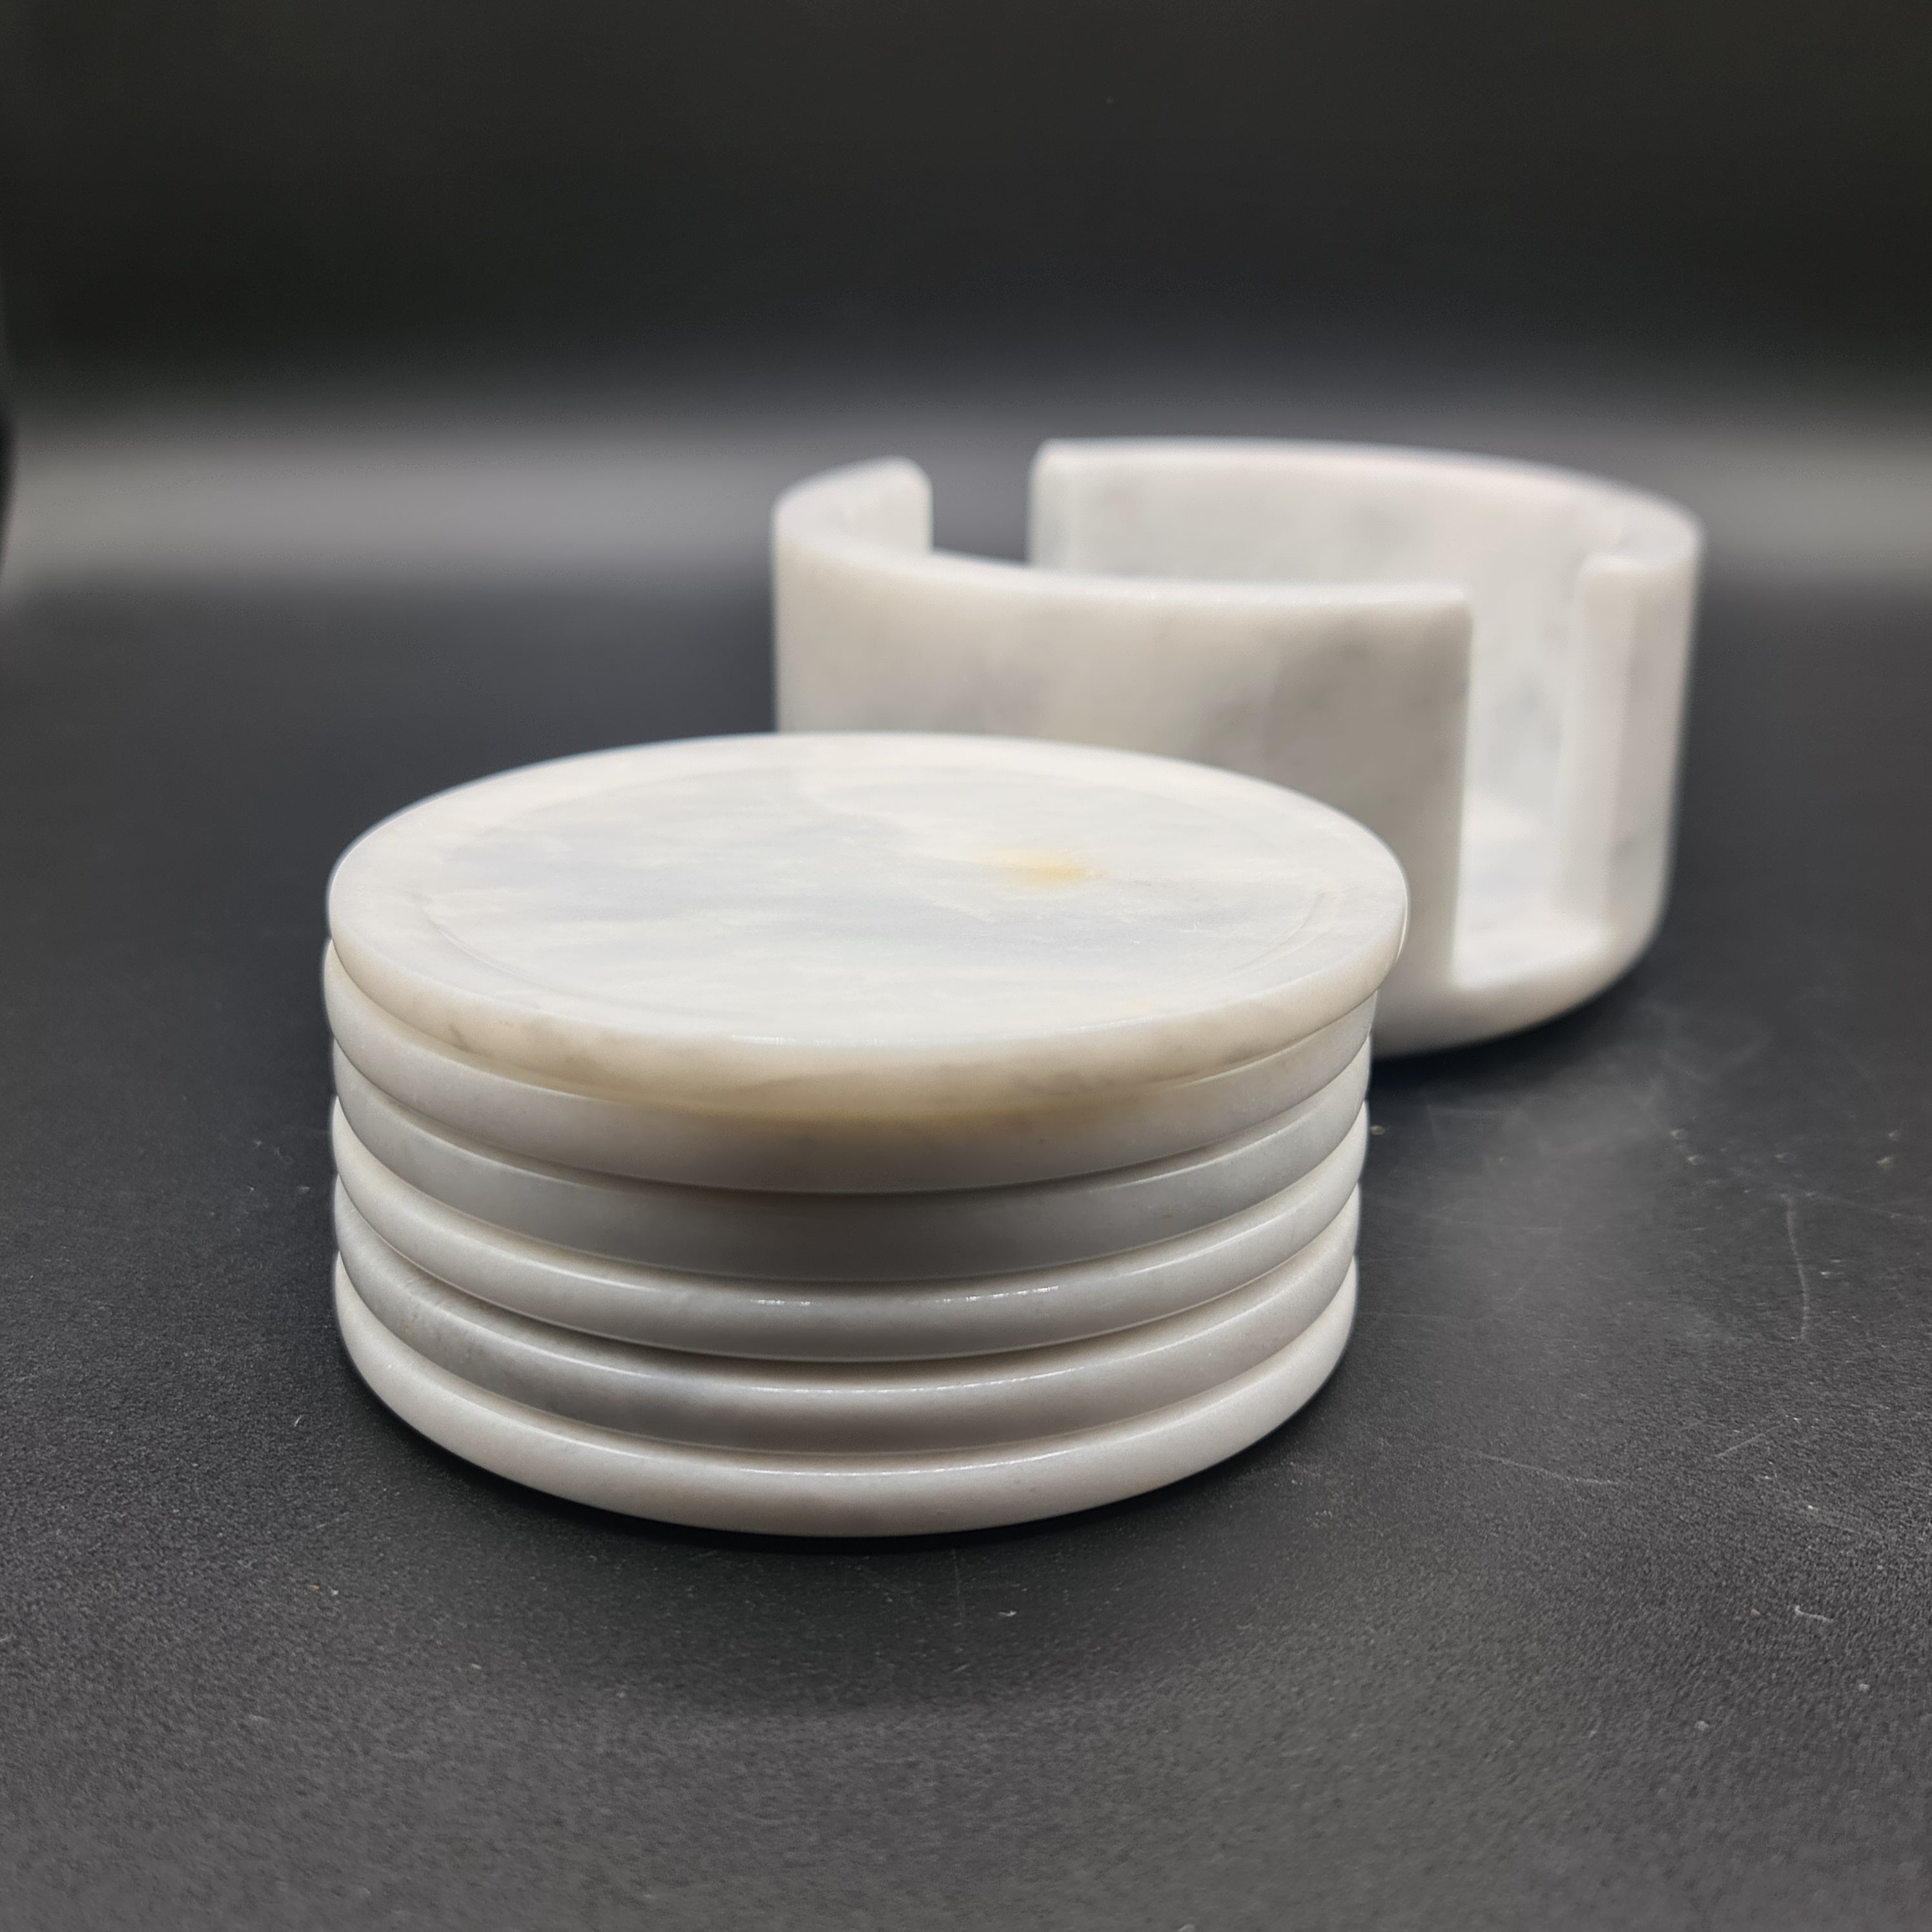 White Marble (Onyx) Tea Coaster - Set of 6